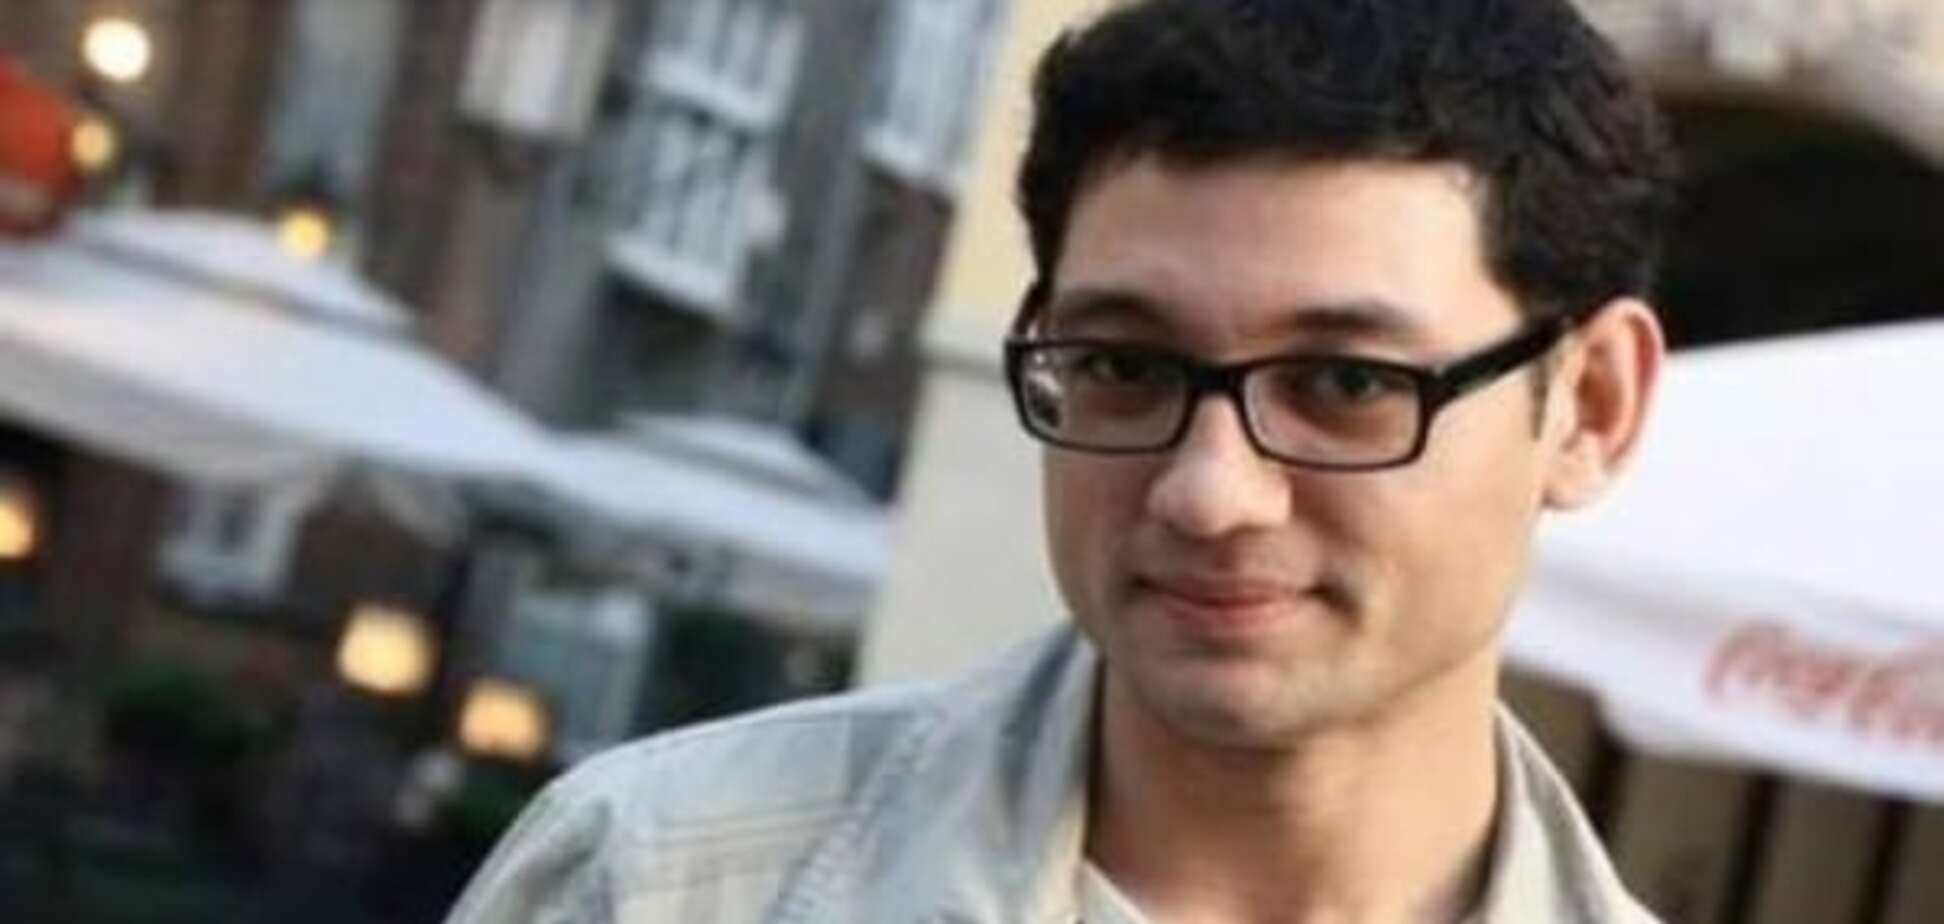 Всех накажем: Минстець отреагировал на задержание крымскотатарского журналиста